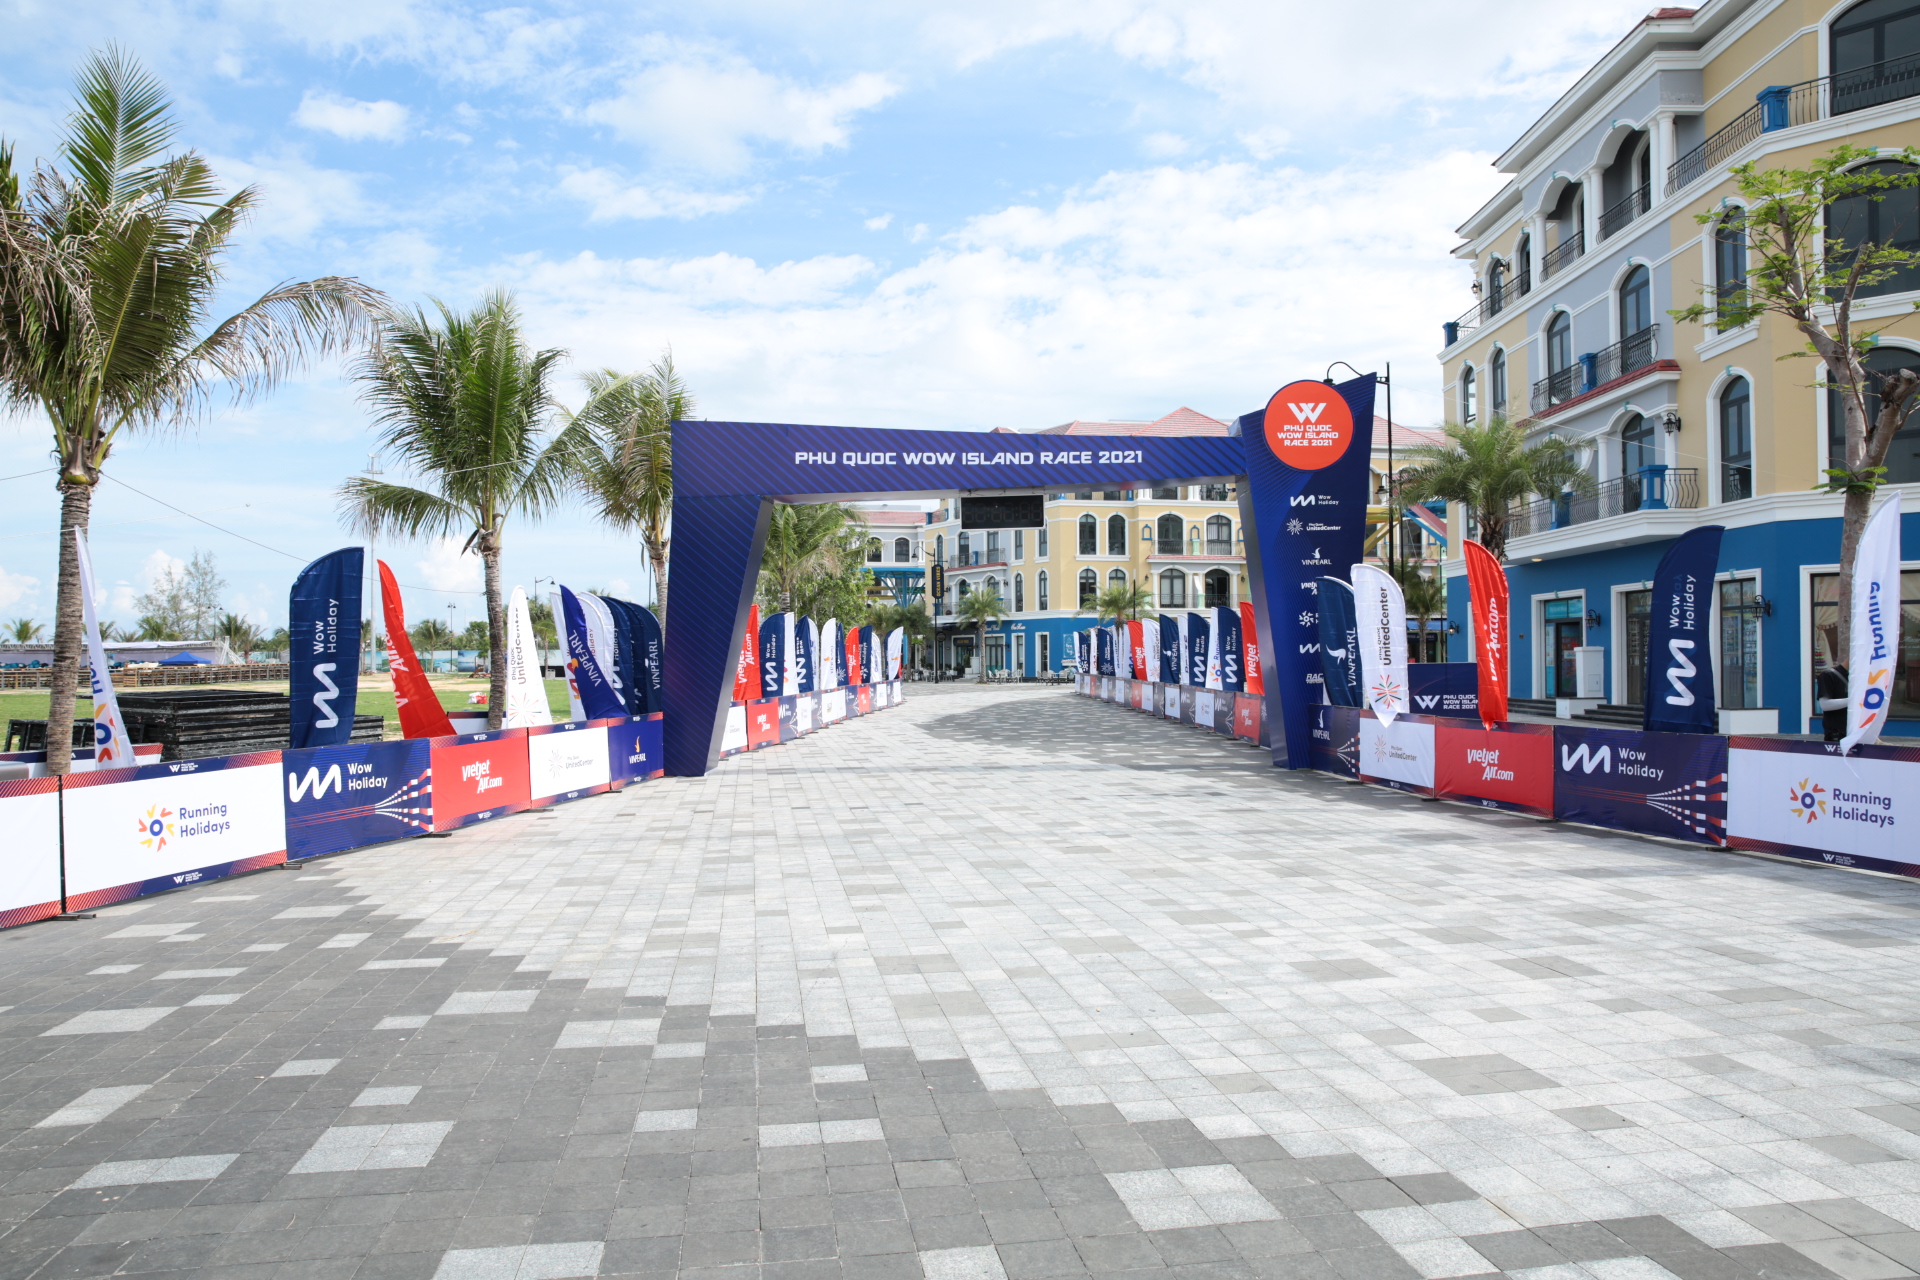 Giải chạy Phú Quốc WOW Island Race 2021 khởi động với hơn 2000 vận động viên tham dự - Ảnh 4.